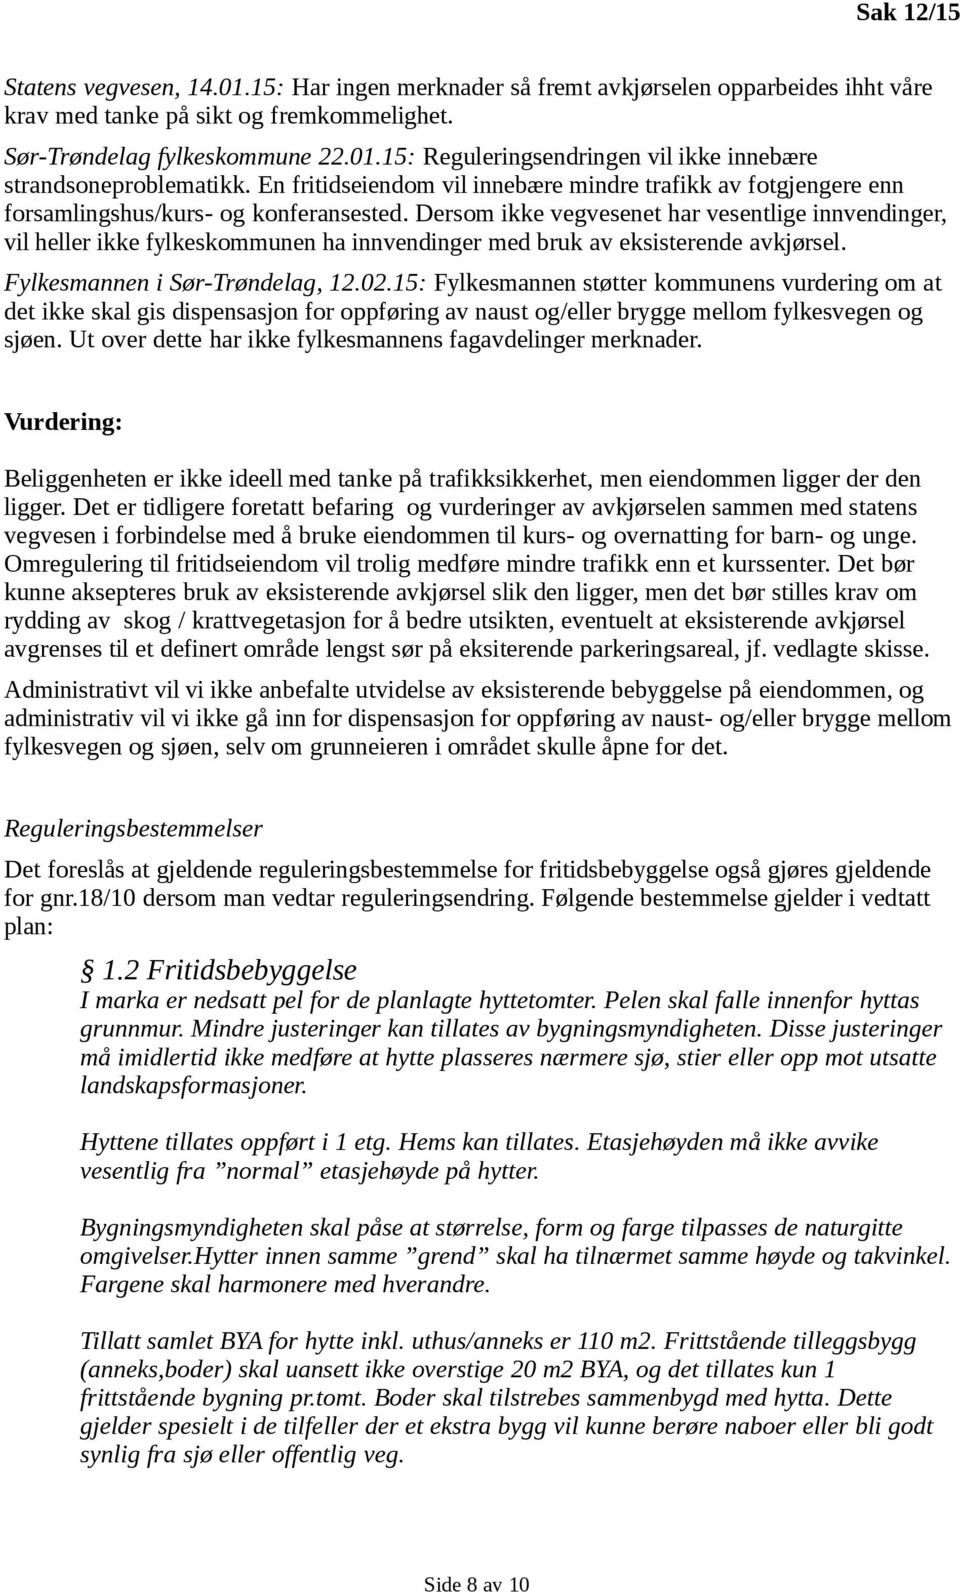 Dersom ikke vegvesenet har vesentlige innvendinger, vil heller ikke fylkeskommunen ha innvendinger med bruk av eksisterende avkjørsel. Fylkesmannen i Sør-Trøndelag, 12.02.